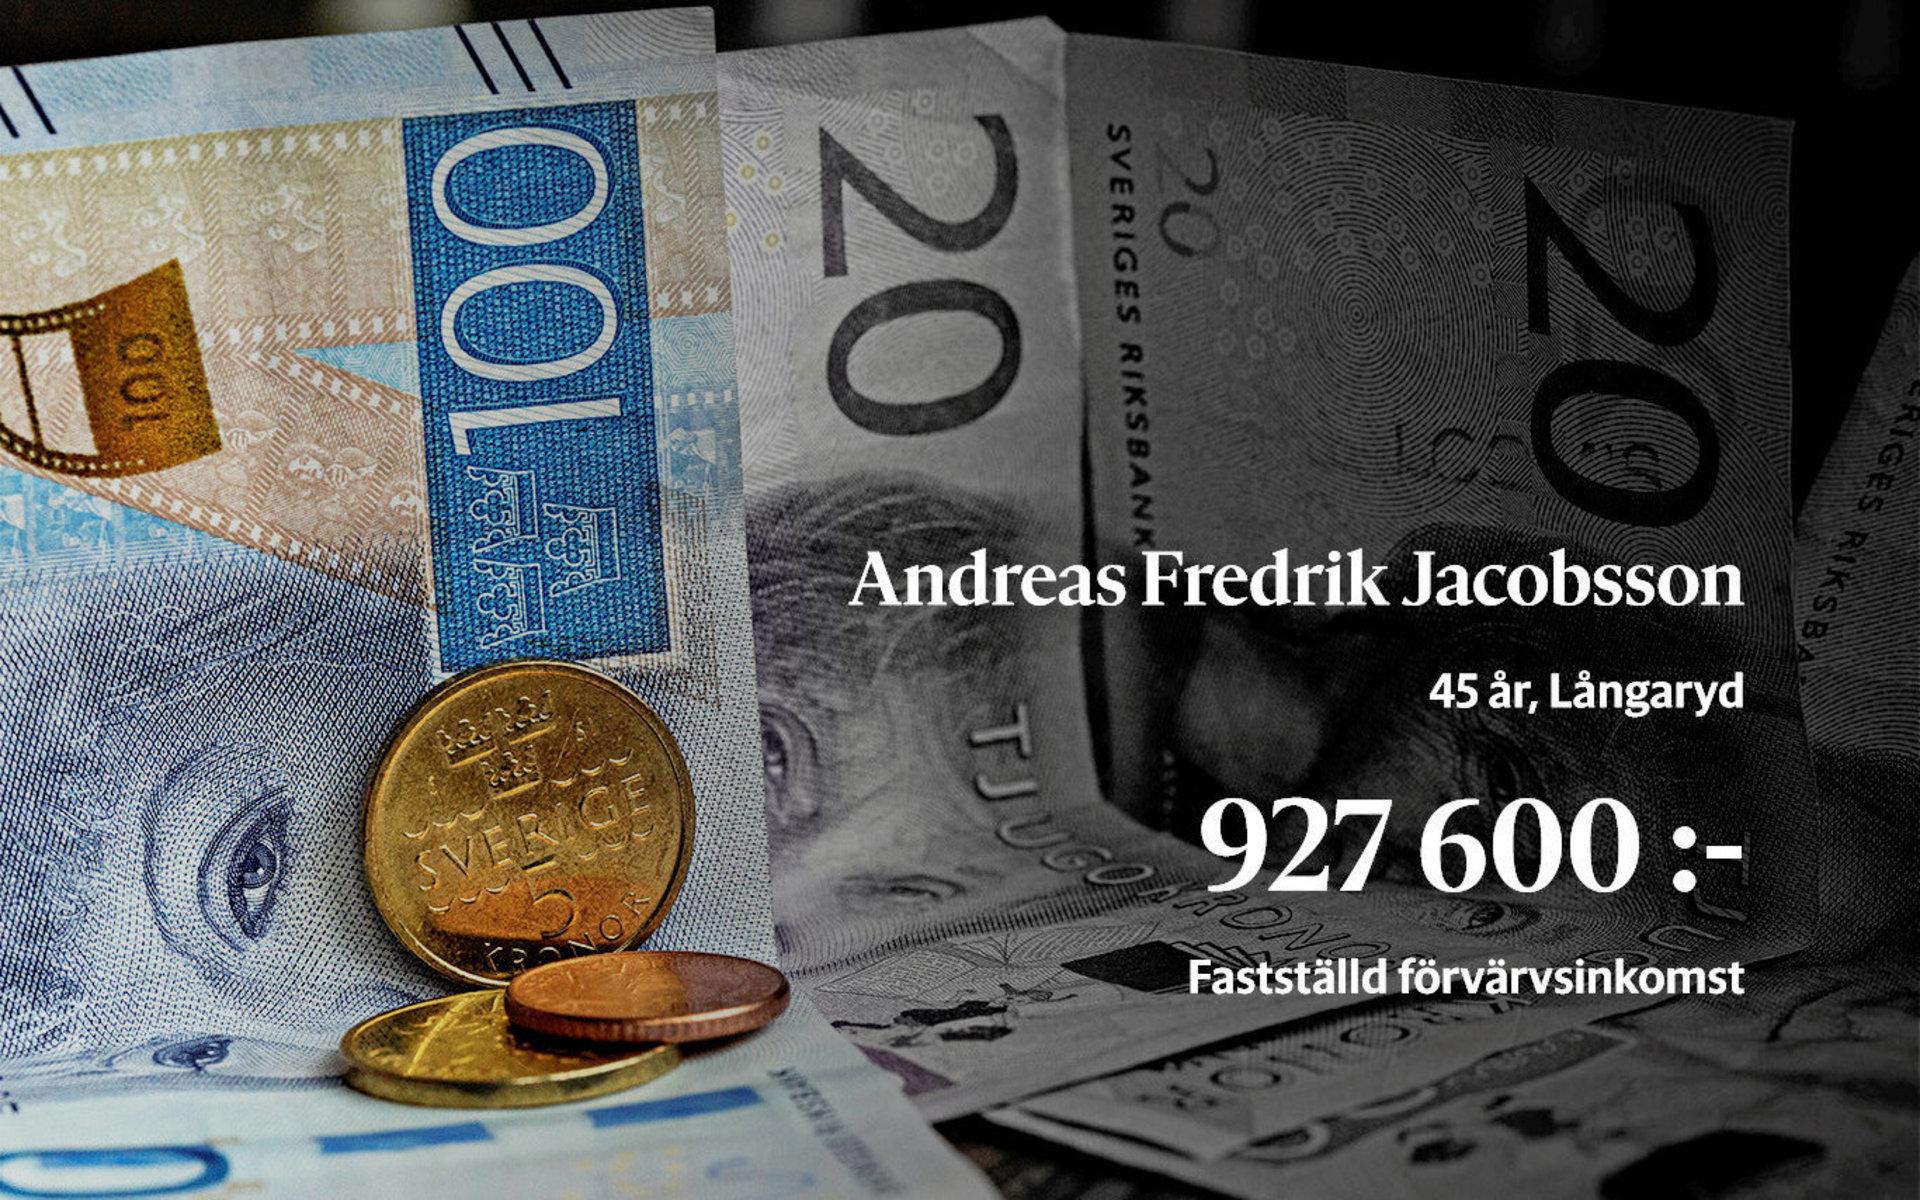 Nummer 16. Andreas Fredrik Jacobsson, idrifttagnings- och startchef på det internationella teknologiföretaget Andritz.